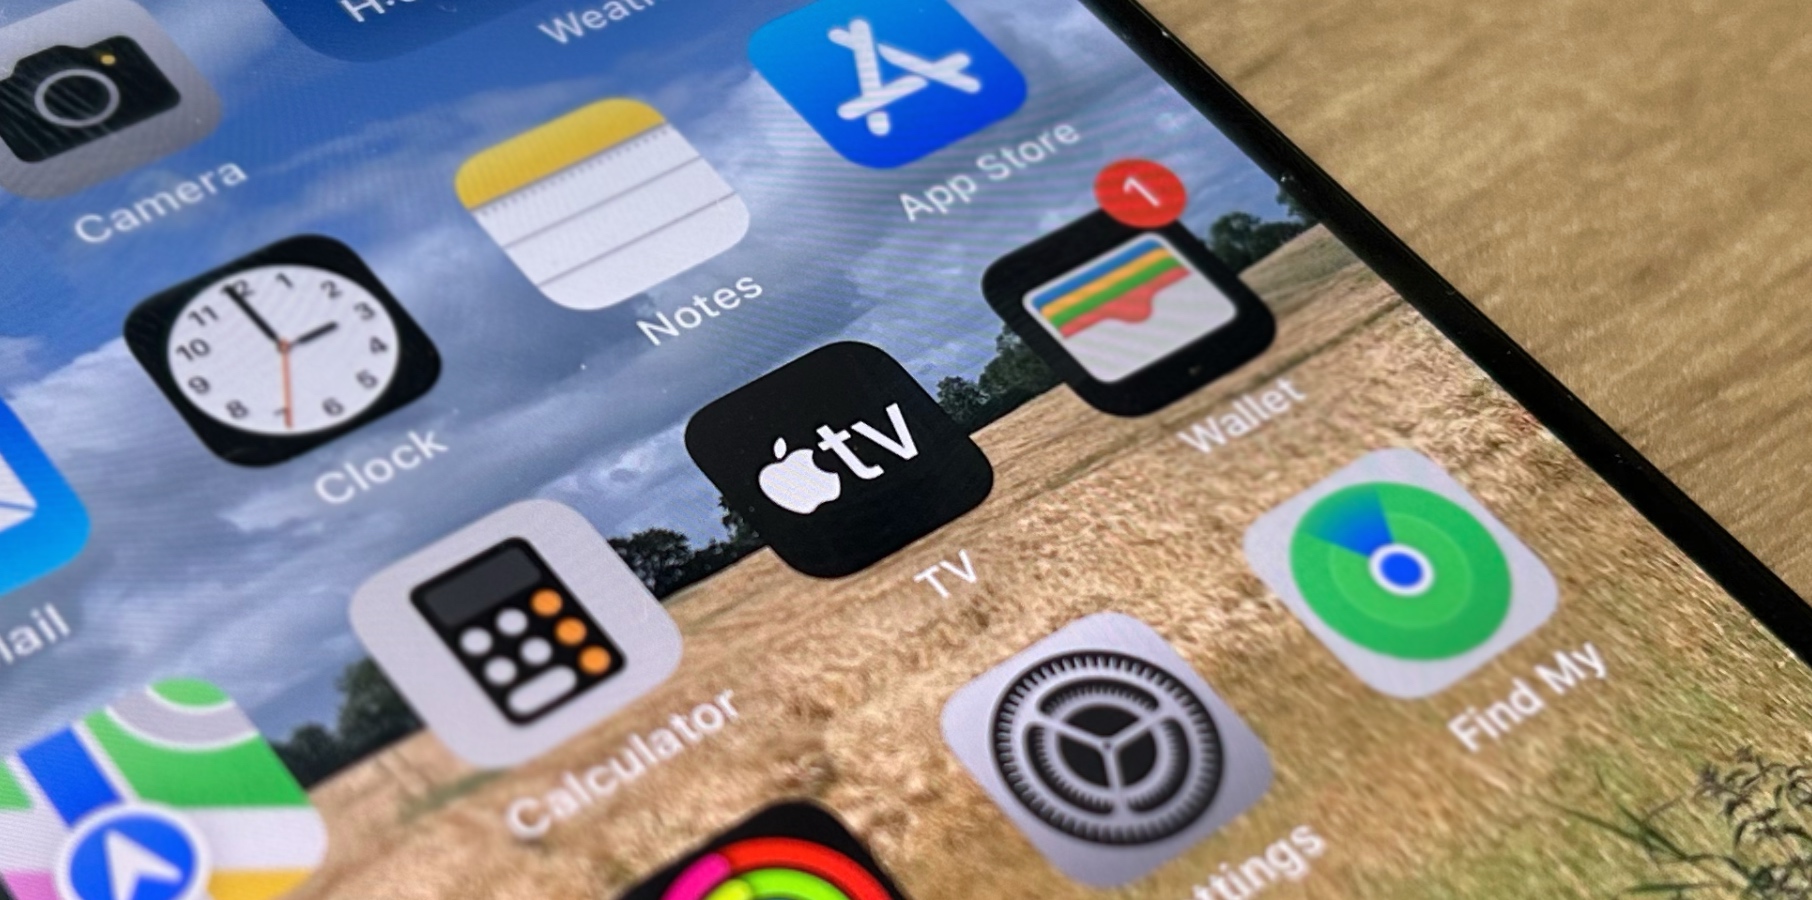 Apple TV app on iPhone running iOS 17.1